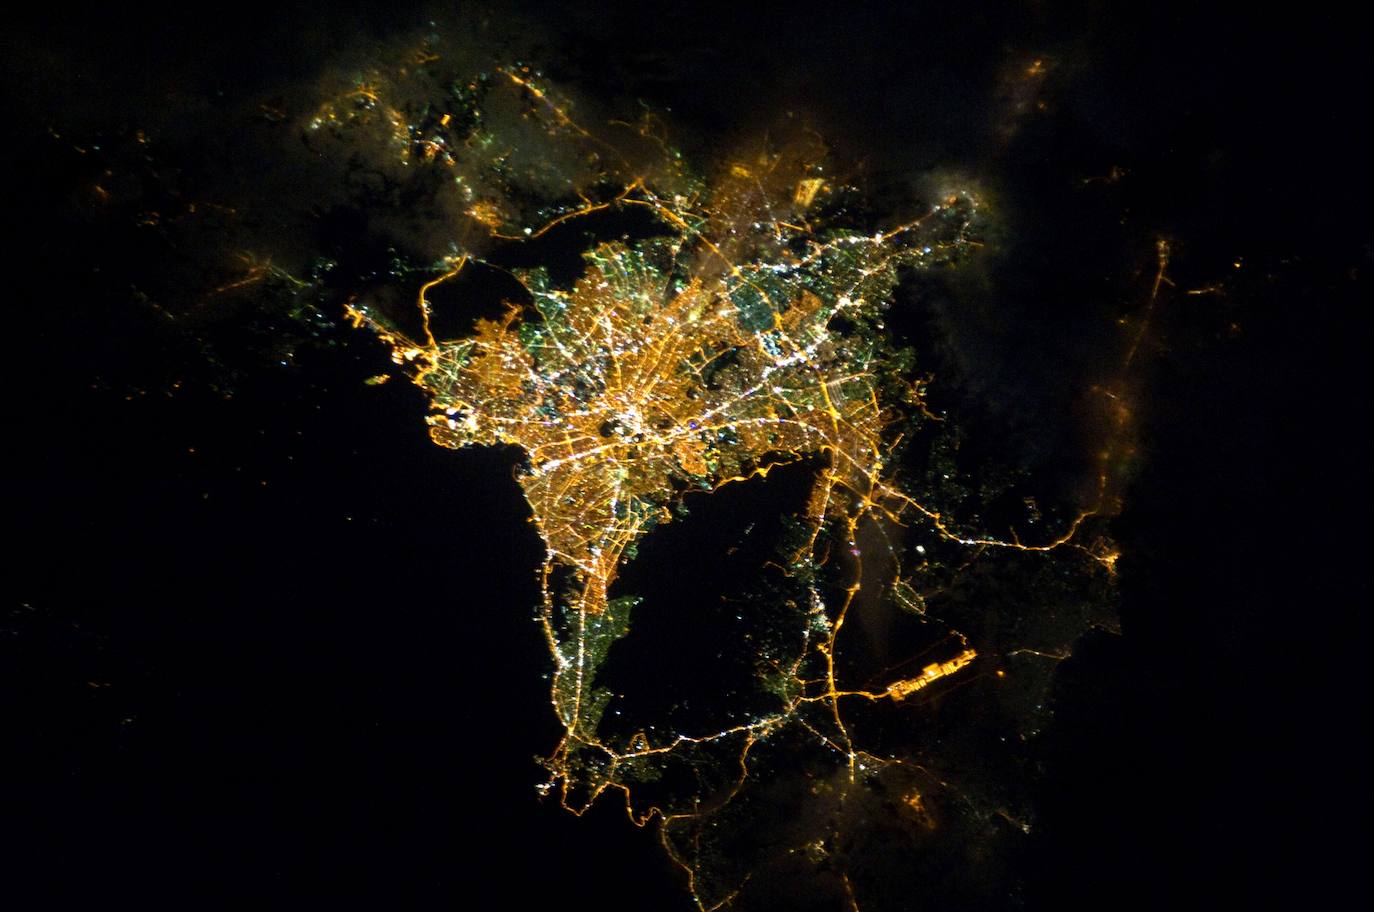 10. Atenas: imagen tomada por el astronauta Paolo Nespoli desde la Estación Espacial Internacional en 2011.